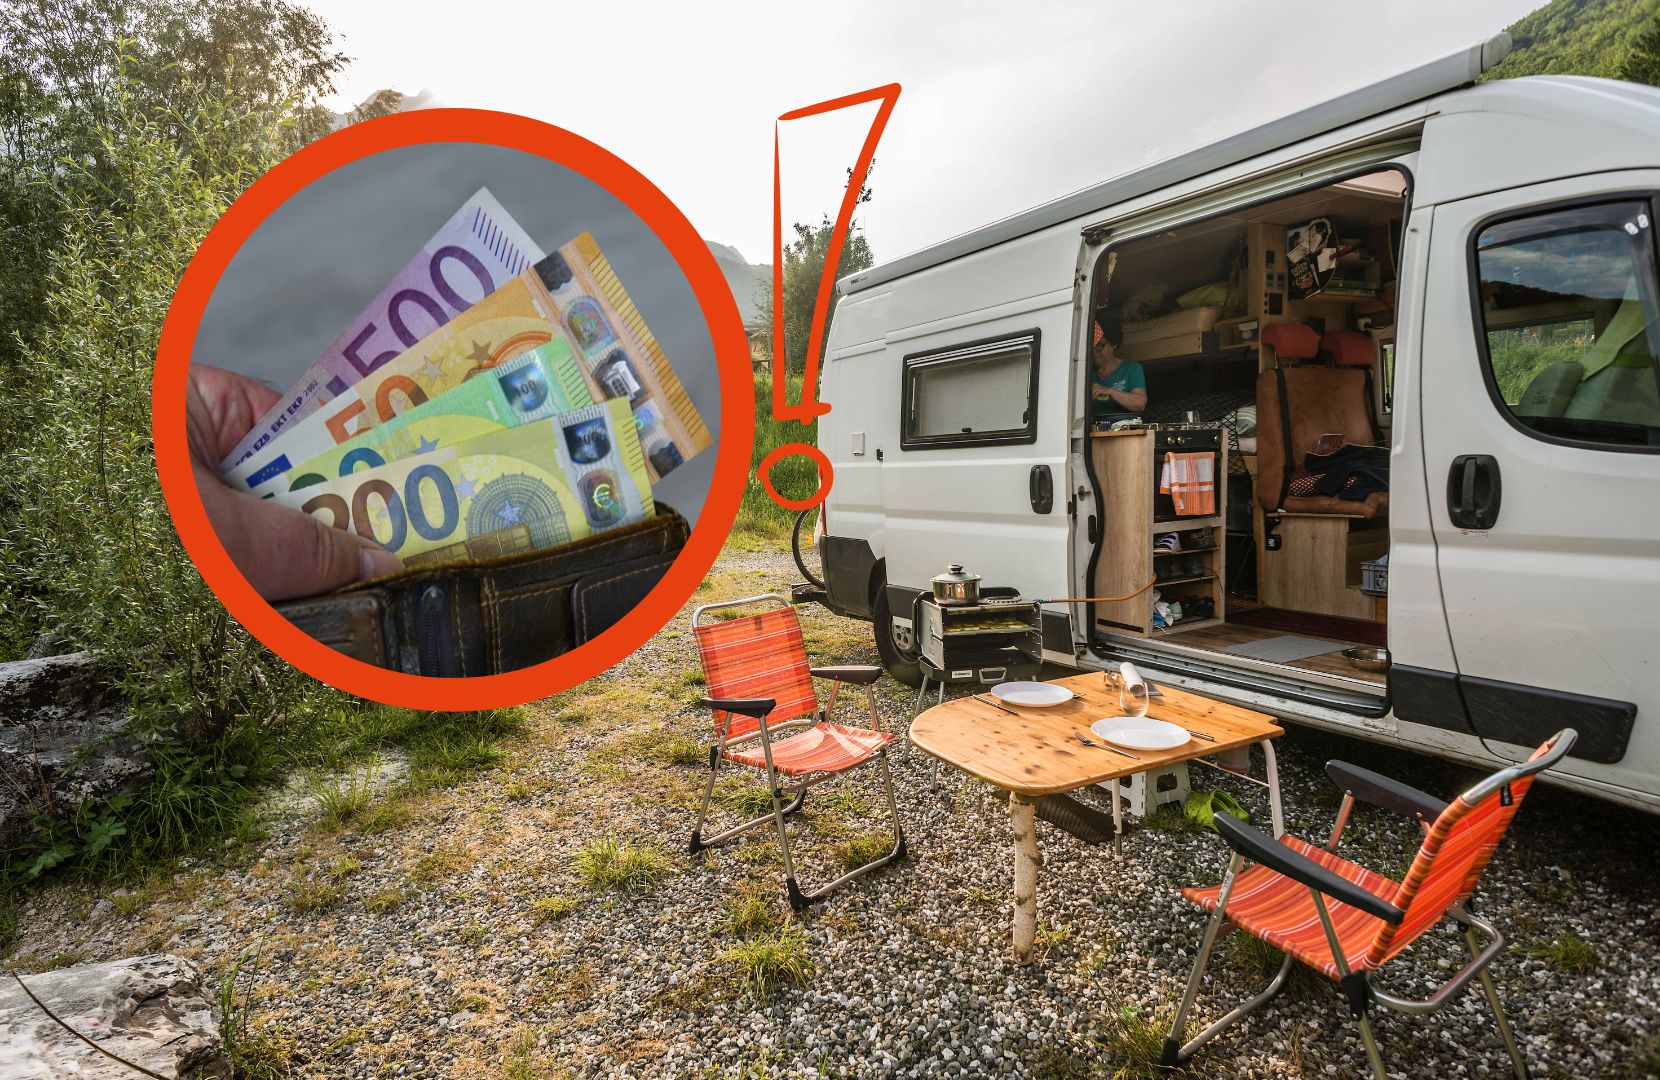 Camping-Sogar-Profis-machen-diese-Fehler-und-zahlen-pl-tzlich-fette-Strafen